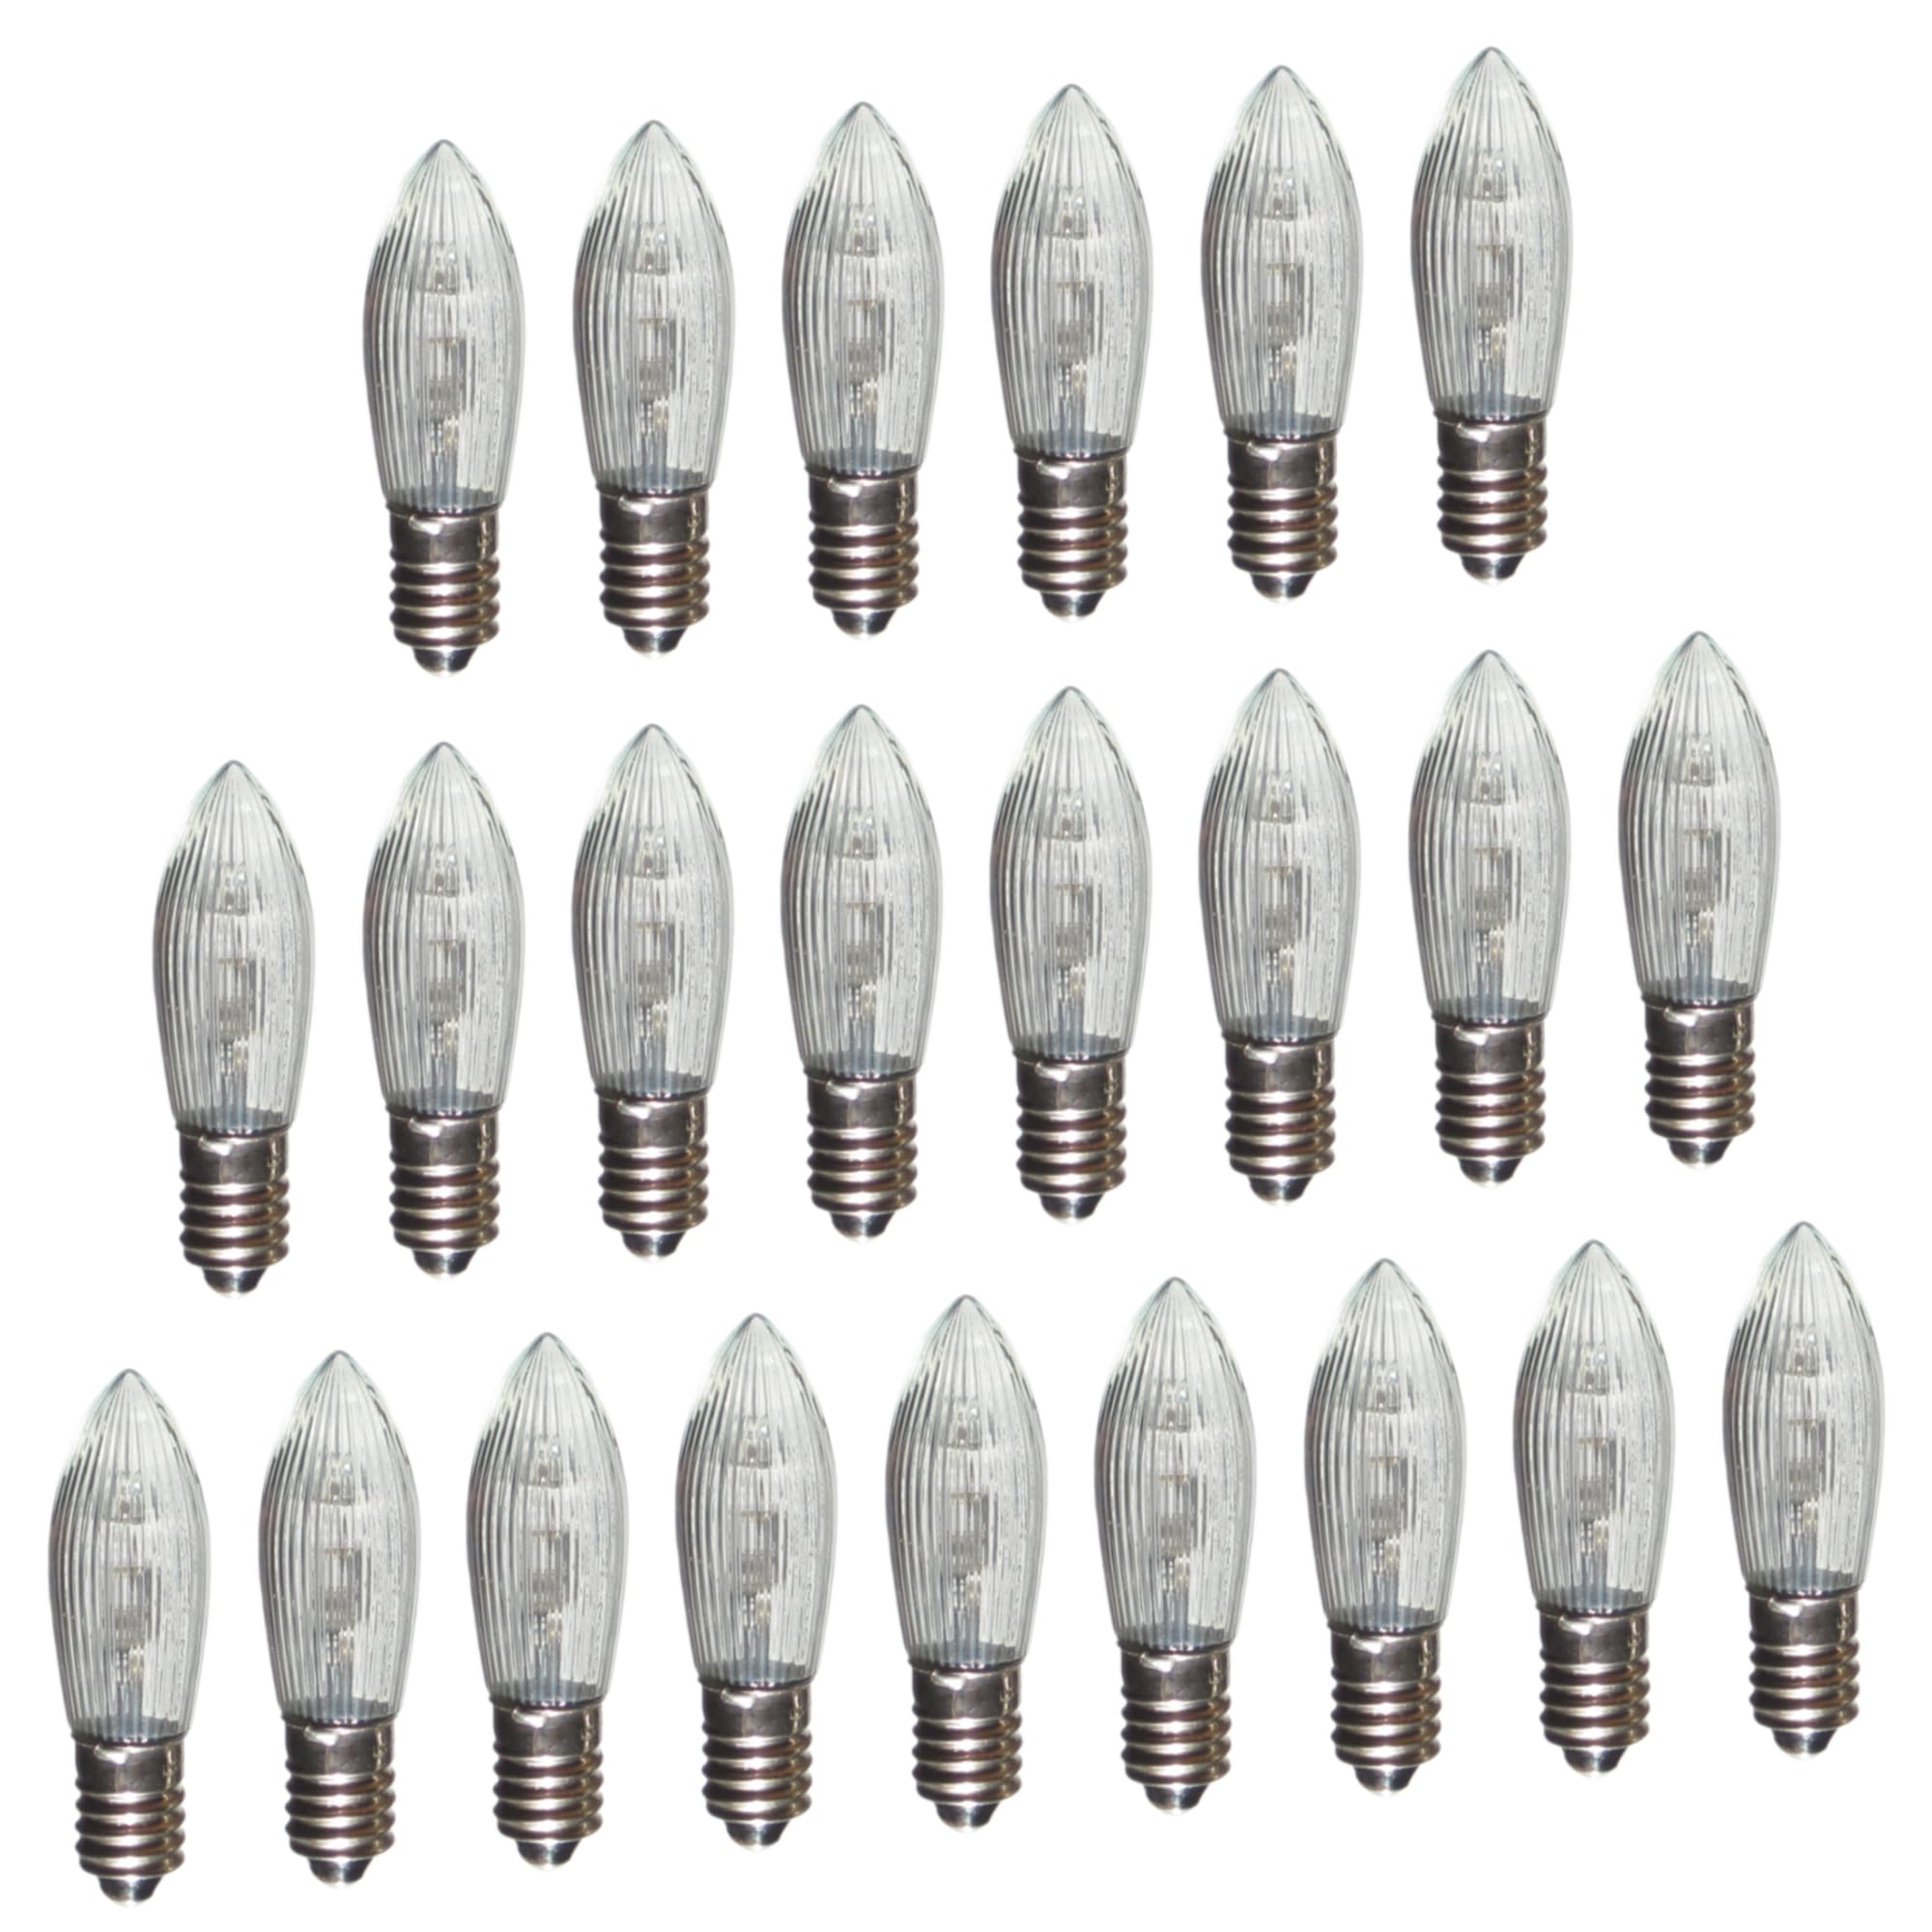 Erzgebirgslicht - AUSWAHL - 23 Stück LED Topkerze 8-55 V 0,1-0,2 W für 4-28 Brennstellen E10 Riffelkerze Ersatzbirne Glühbirne Glühlämpchen für Lichterketten Pyramide Schwibbogen